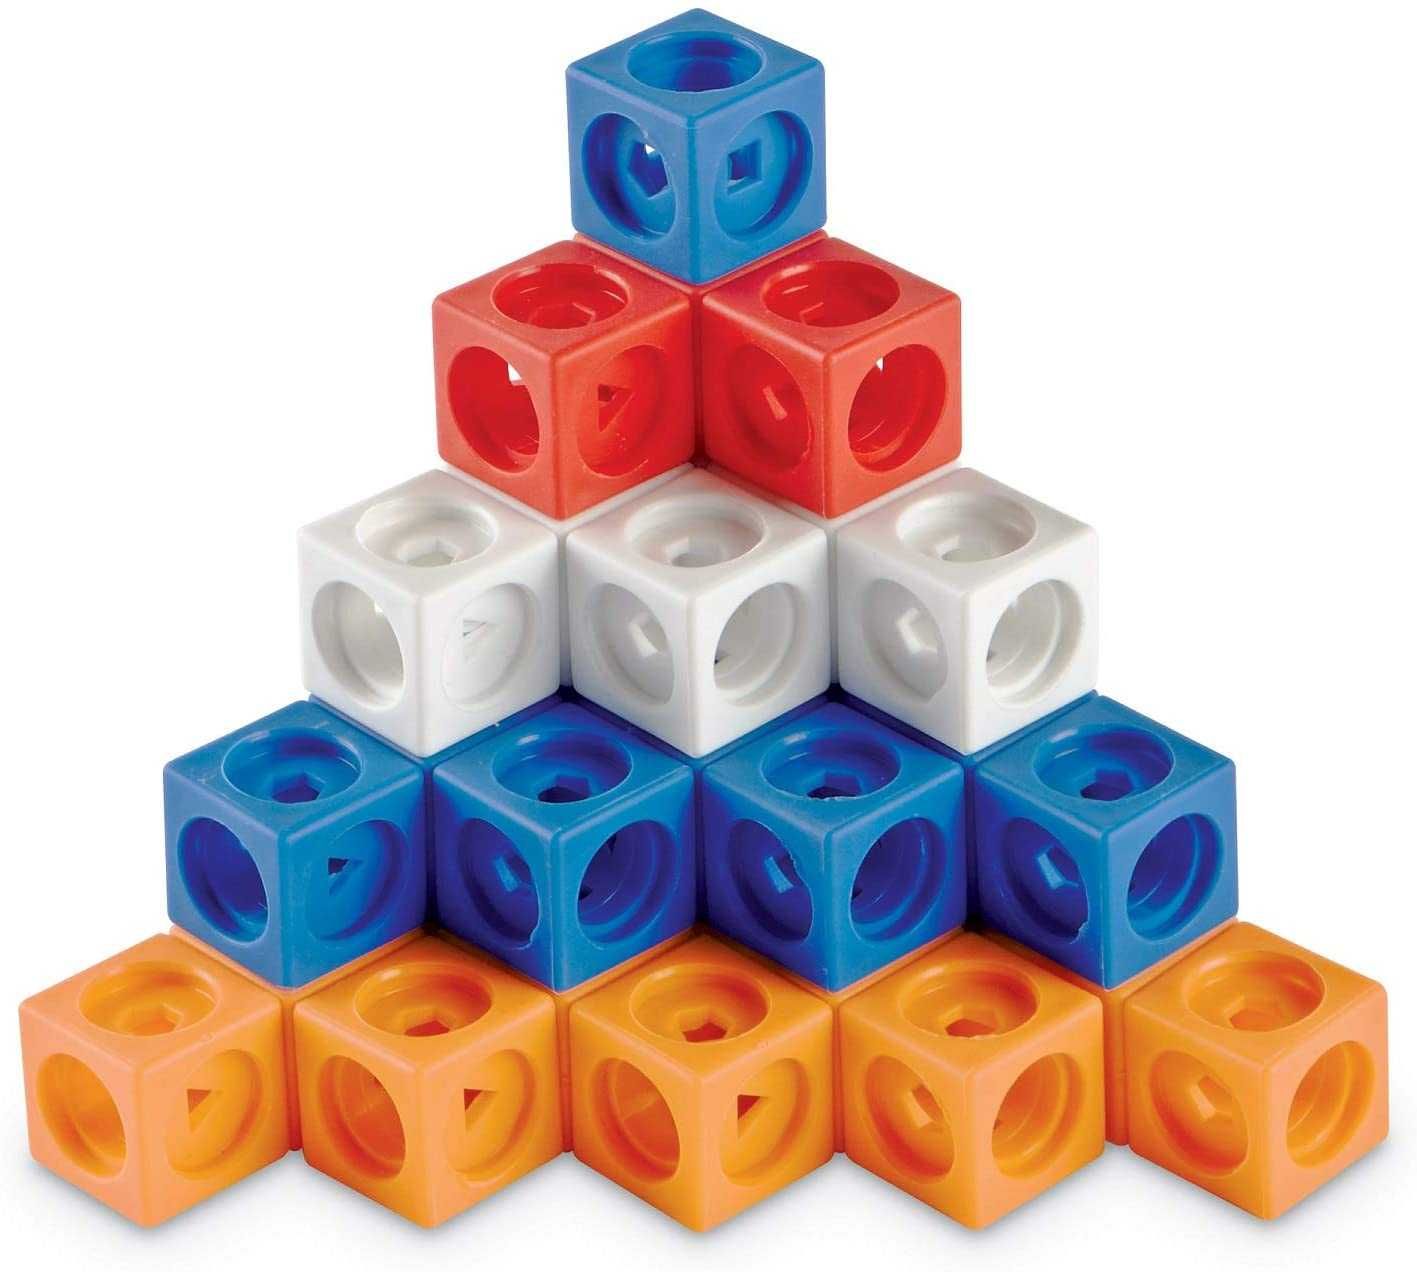 Learning Resources Развивающий игровой набор конструктор кубики 100